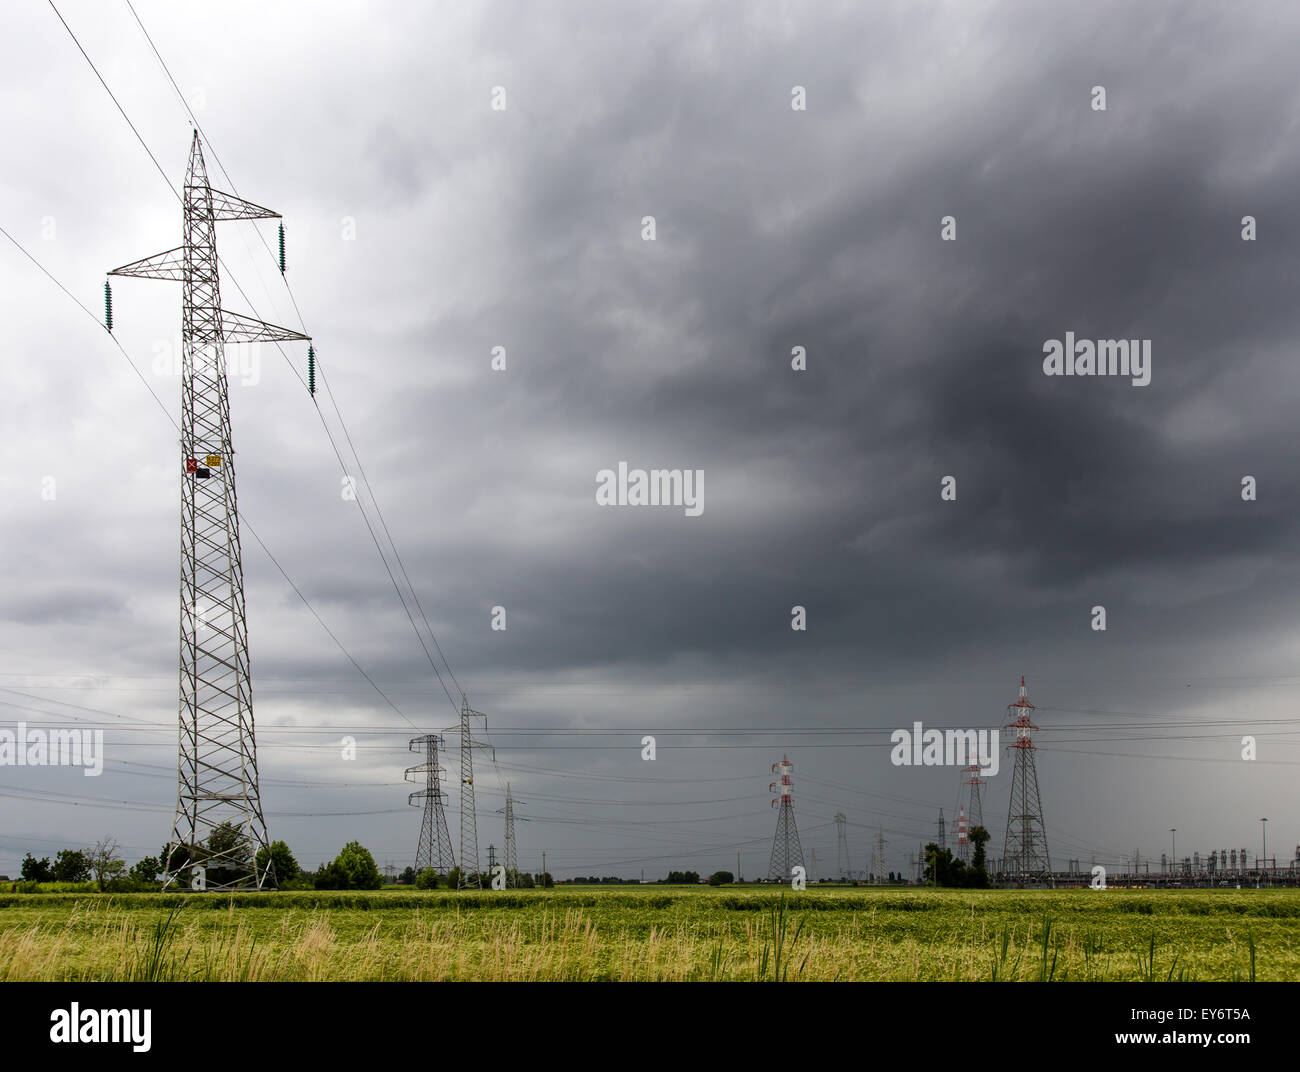 Pylônes de tension dans un champ de blé pendant un orage Banque D'Images